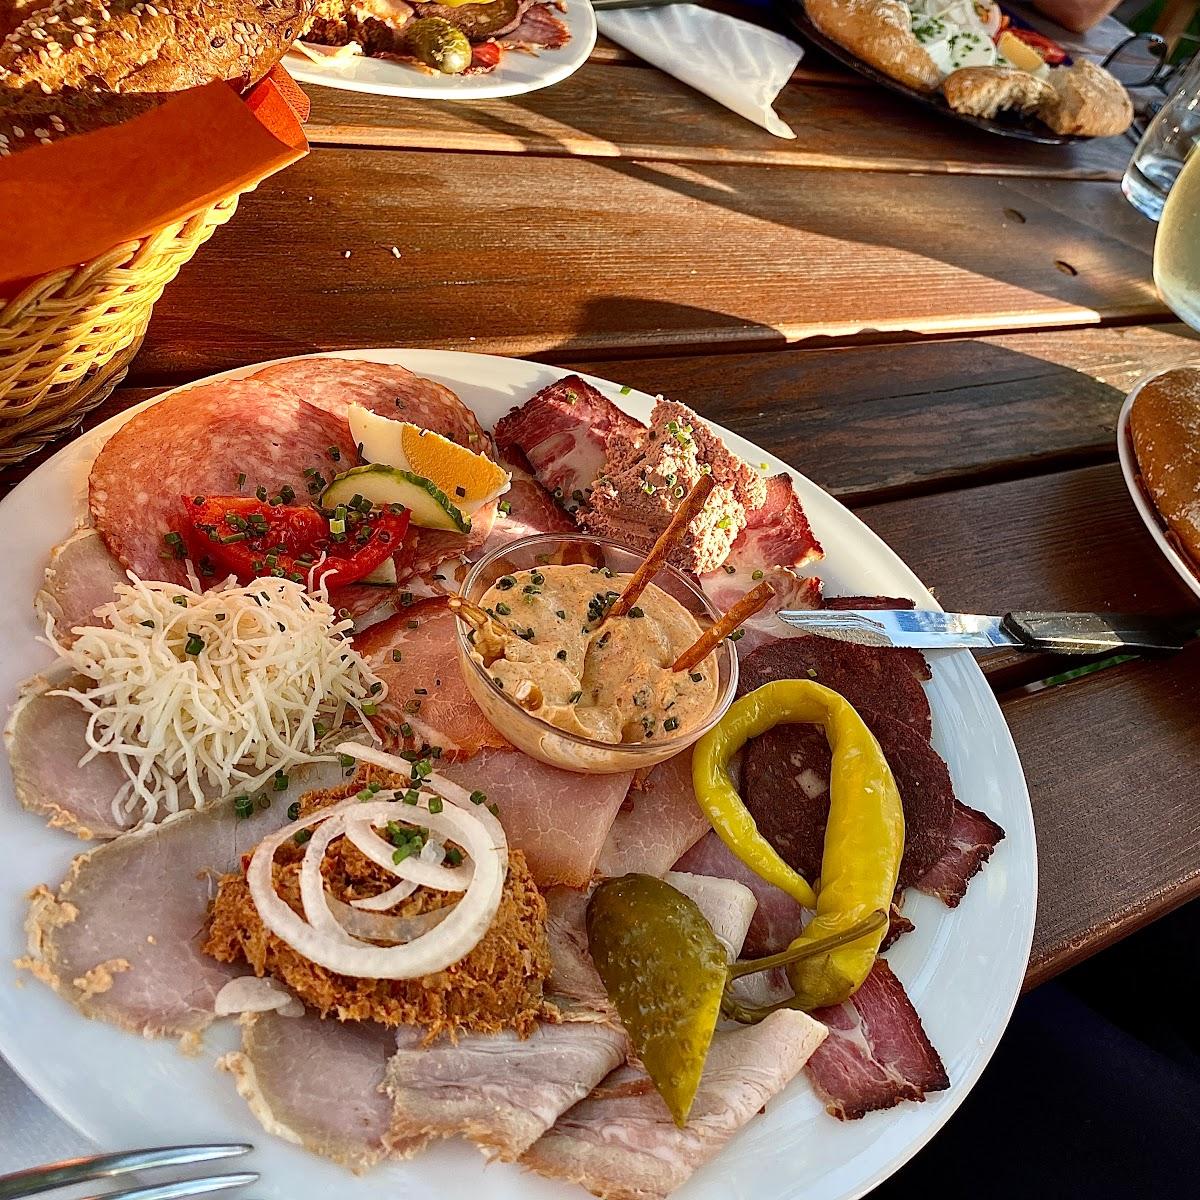 Restaurant "Heurigen Familie Hanifogl-Niehsner" in Mautern an der Donau